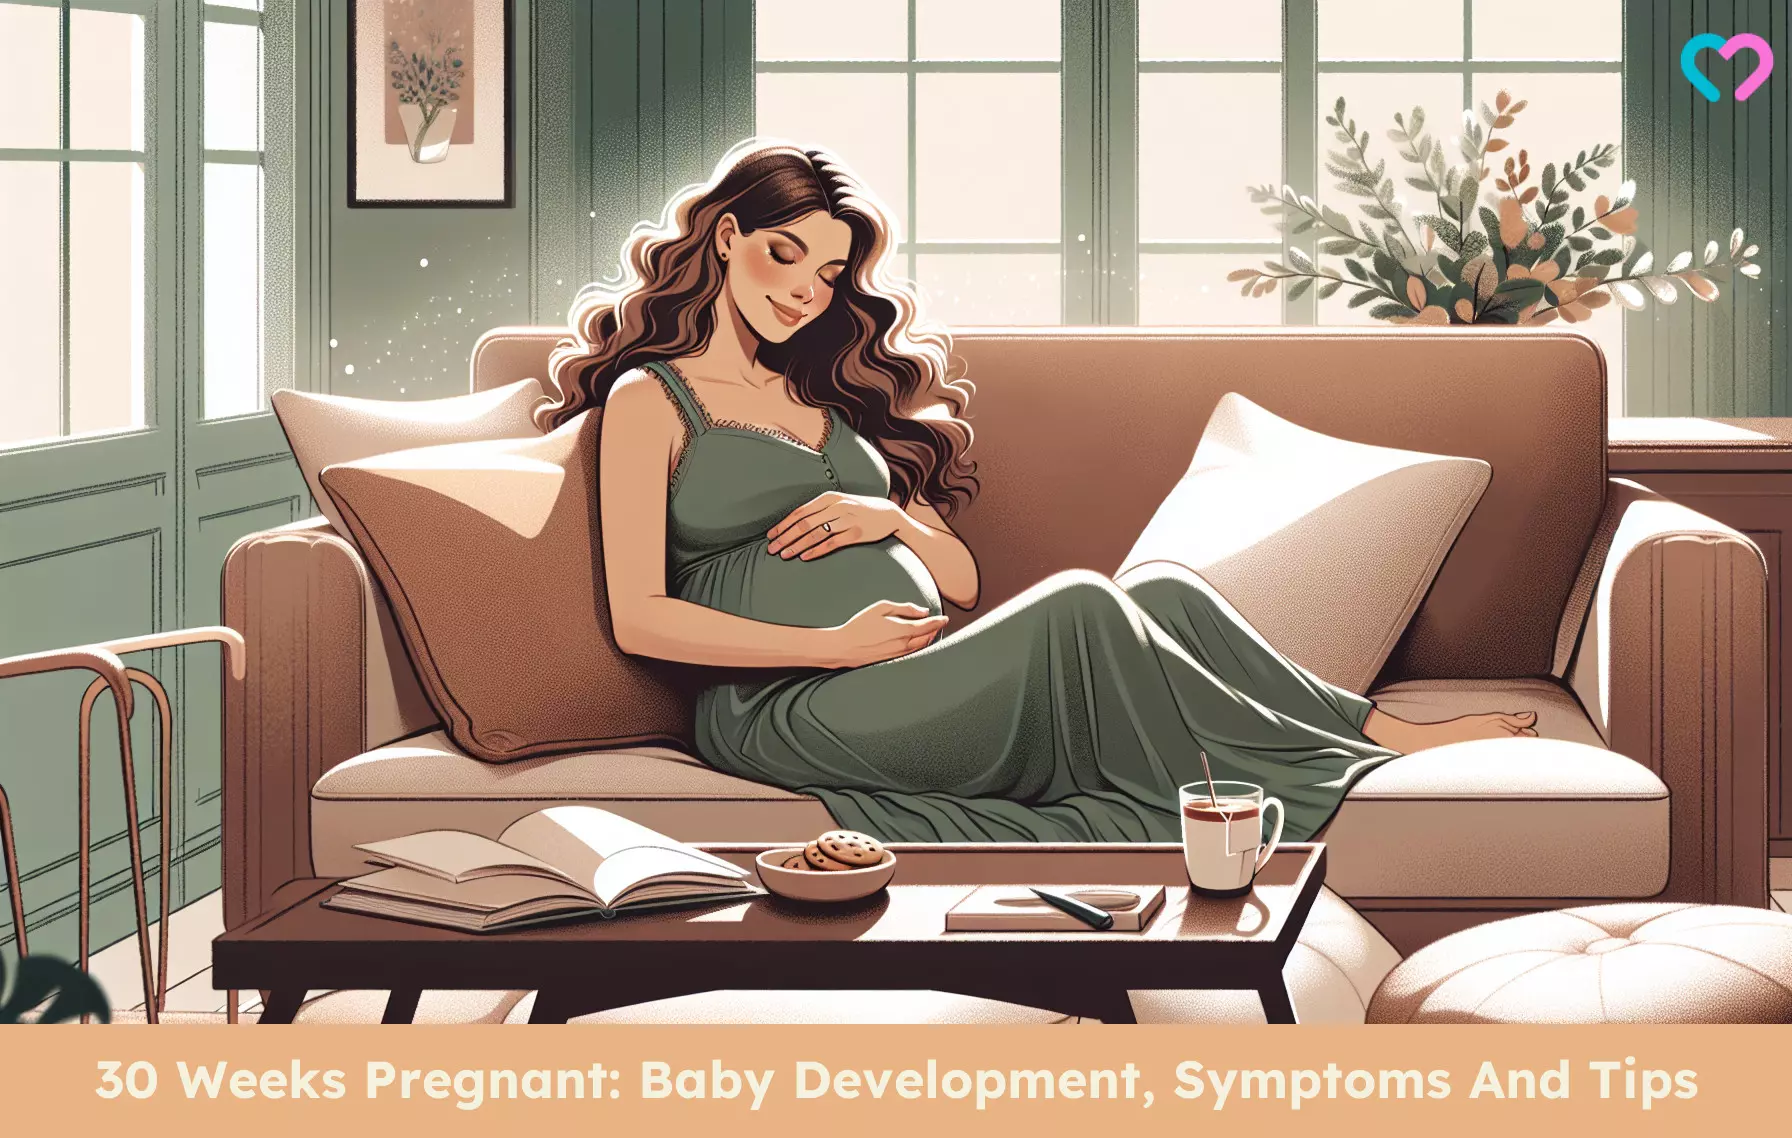 30th Week Pregnancy_illustration